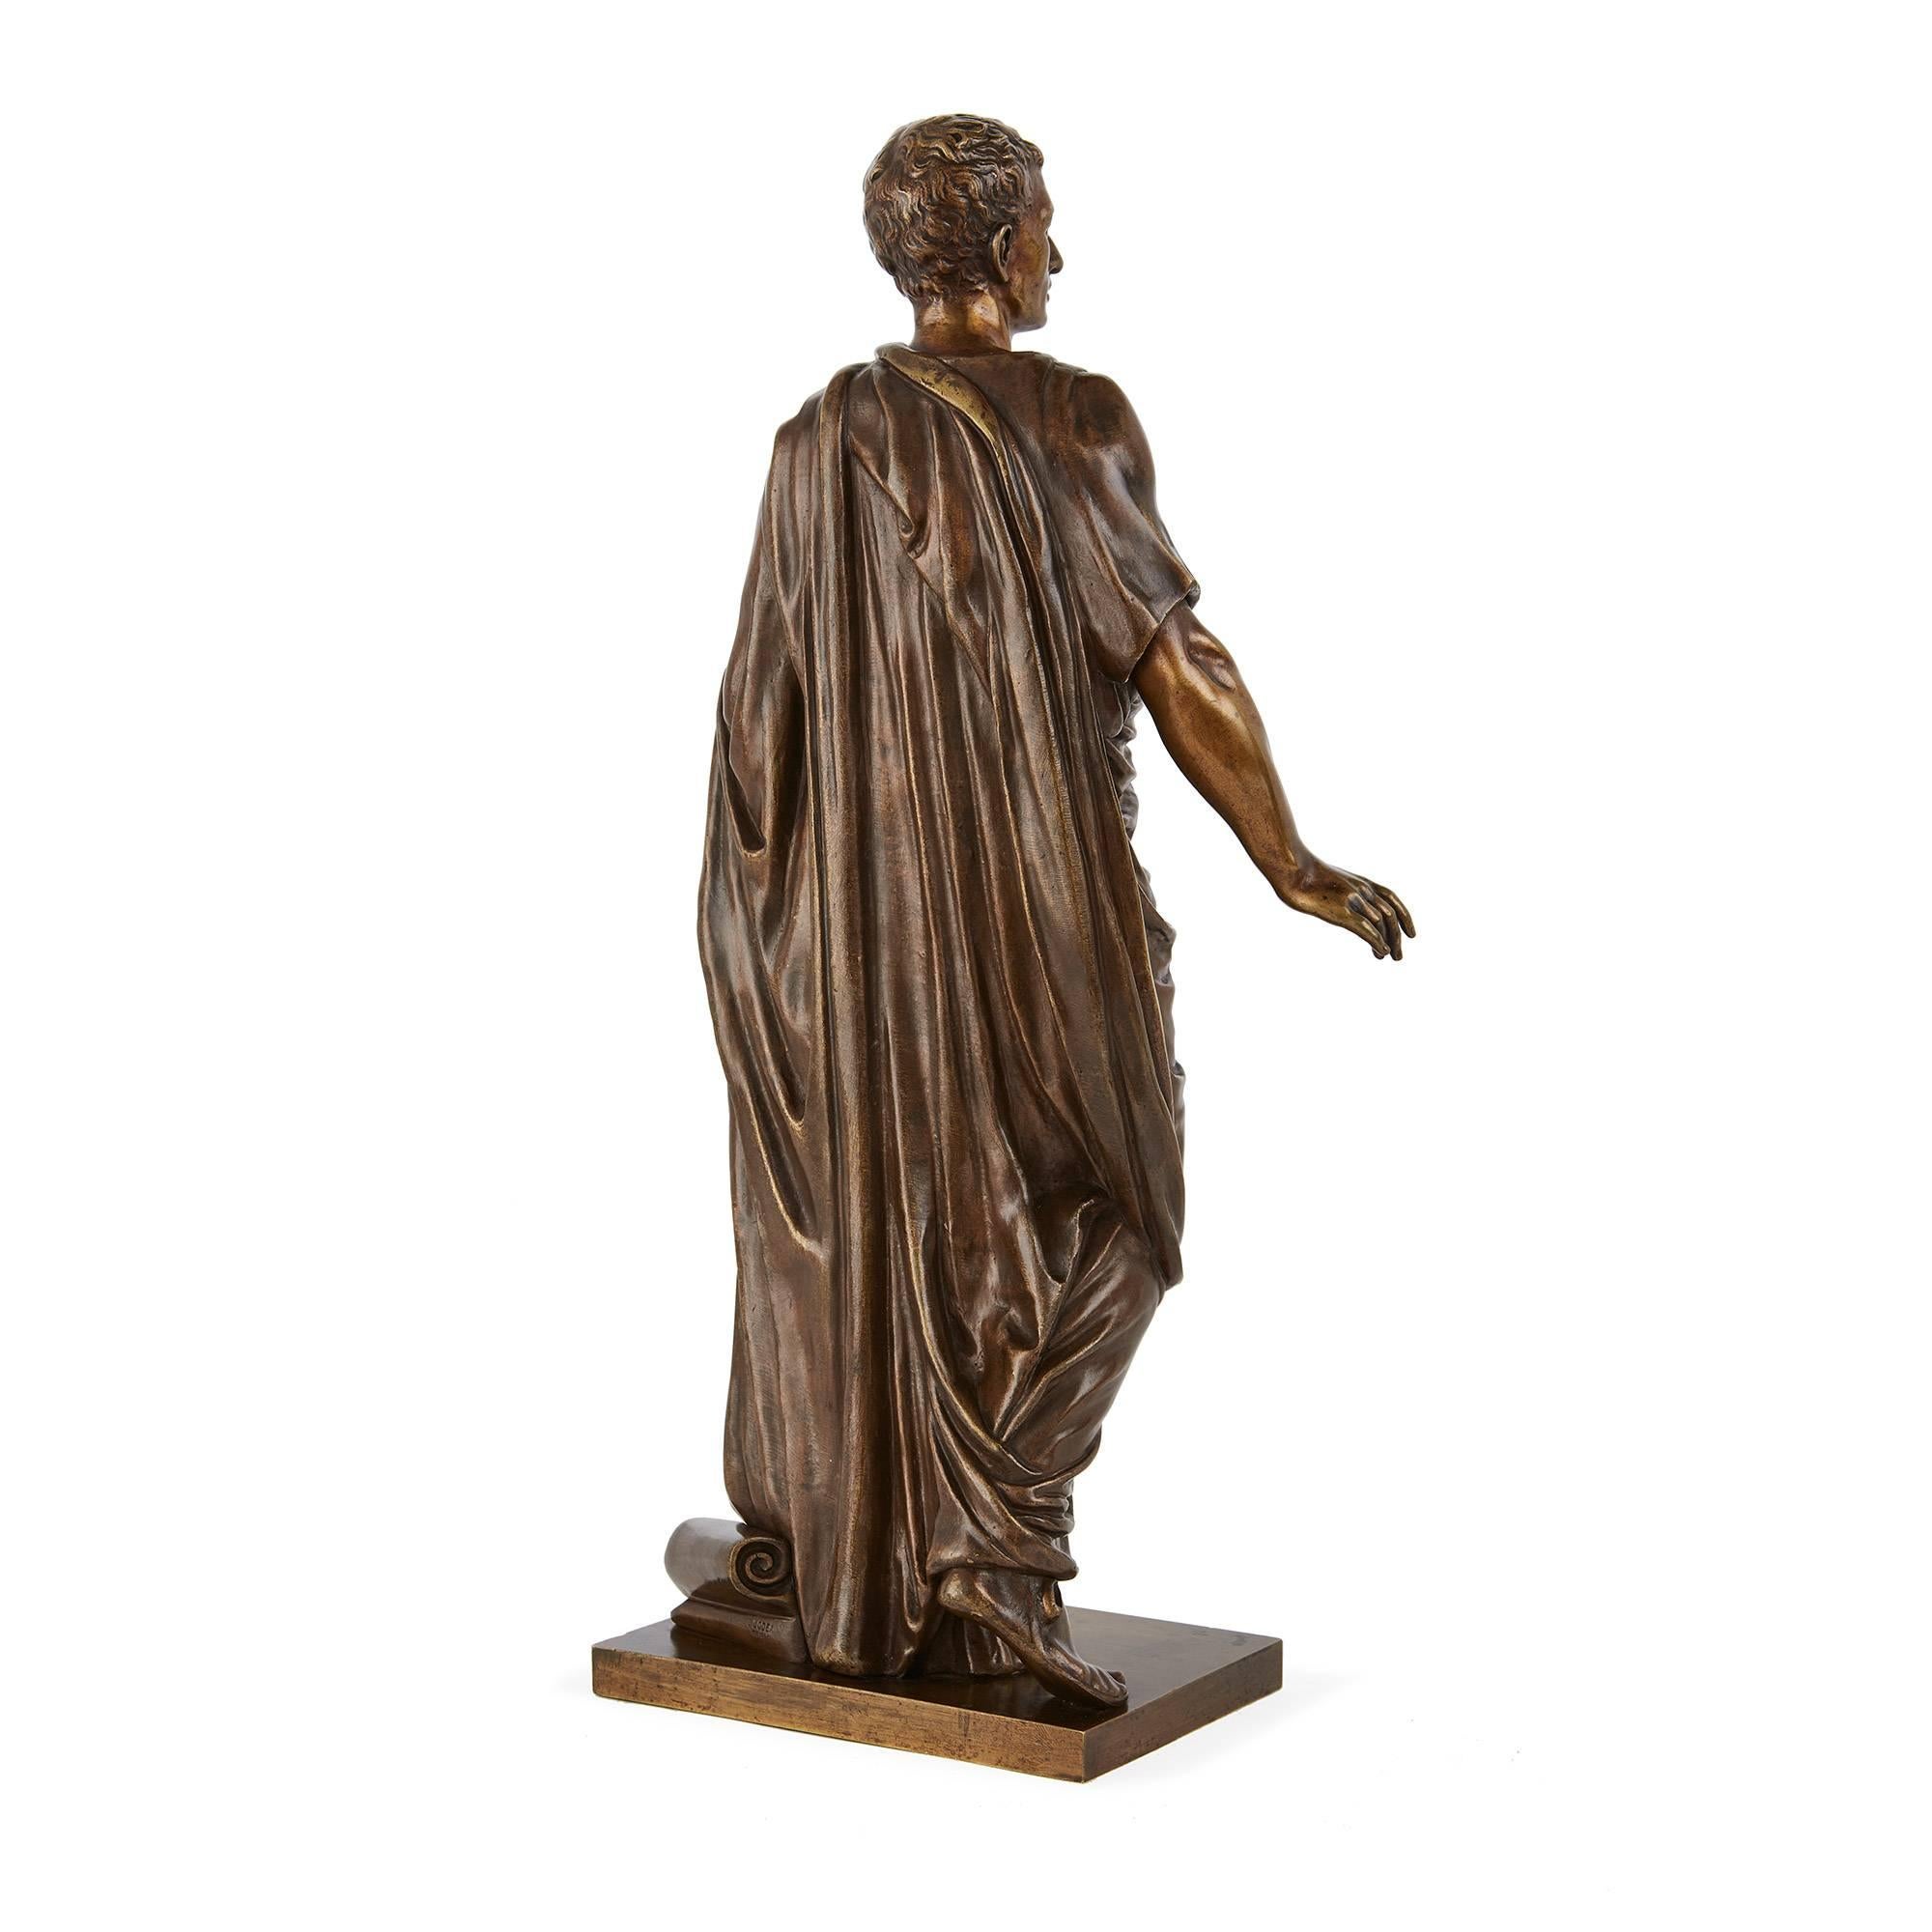 Ce beau personnage, tout en longueur, est modelé dans la pose contrapposto, une position issue de la sculpture classique de la Grèce antique. Les arts visuels utilisent le terme 